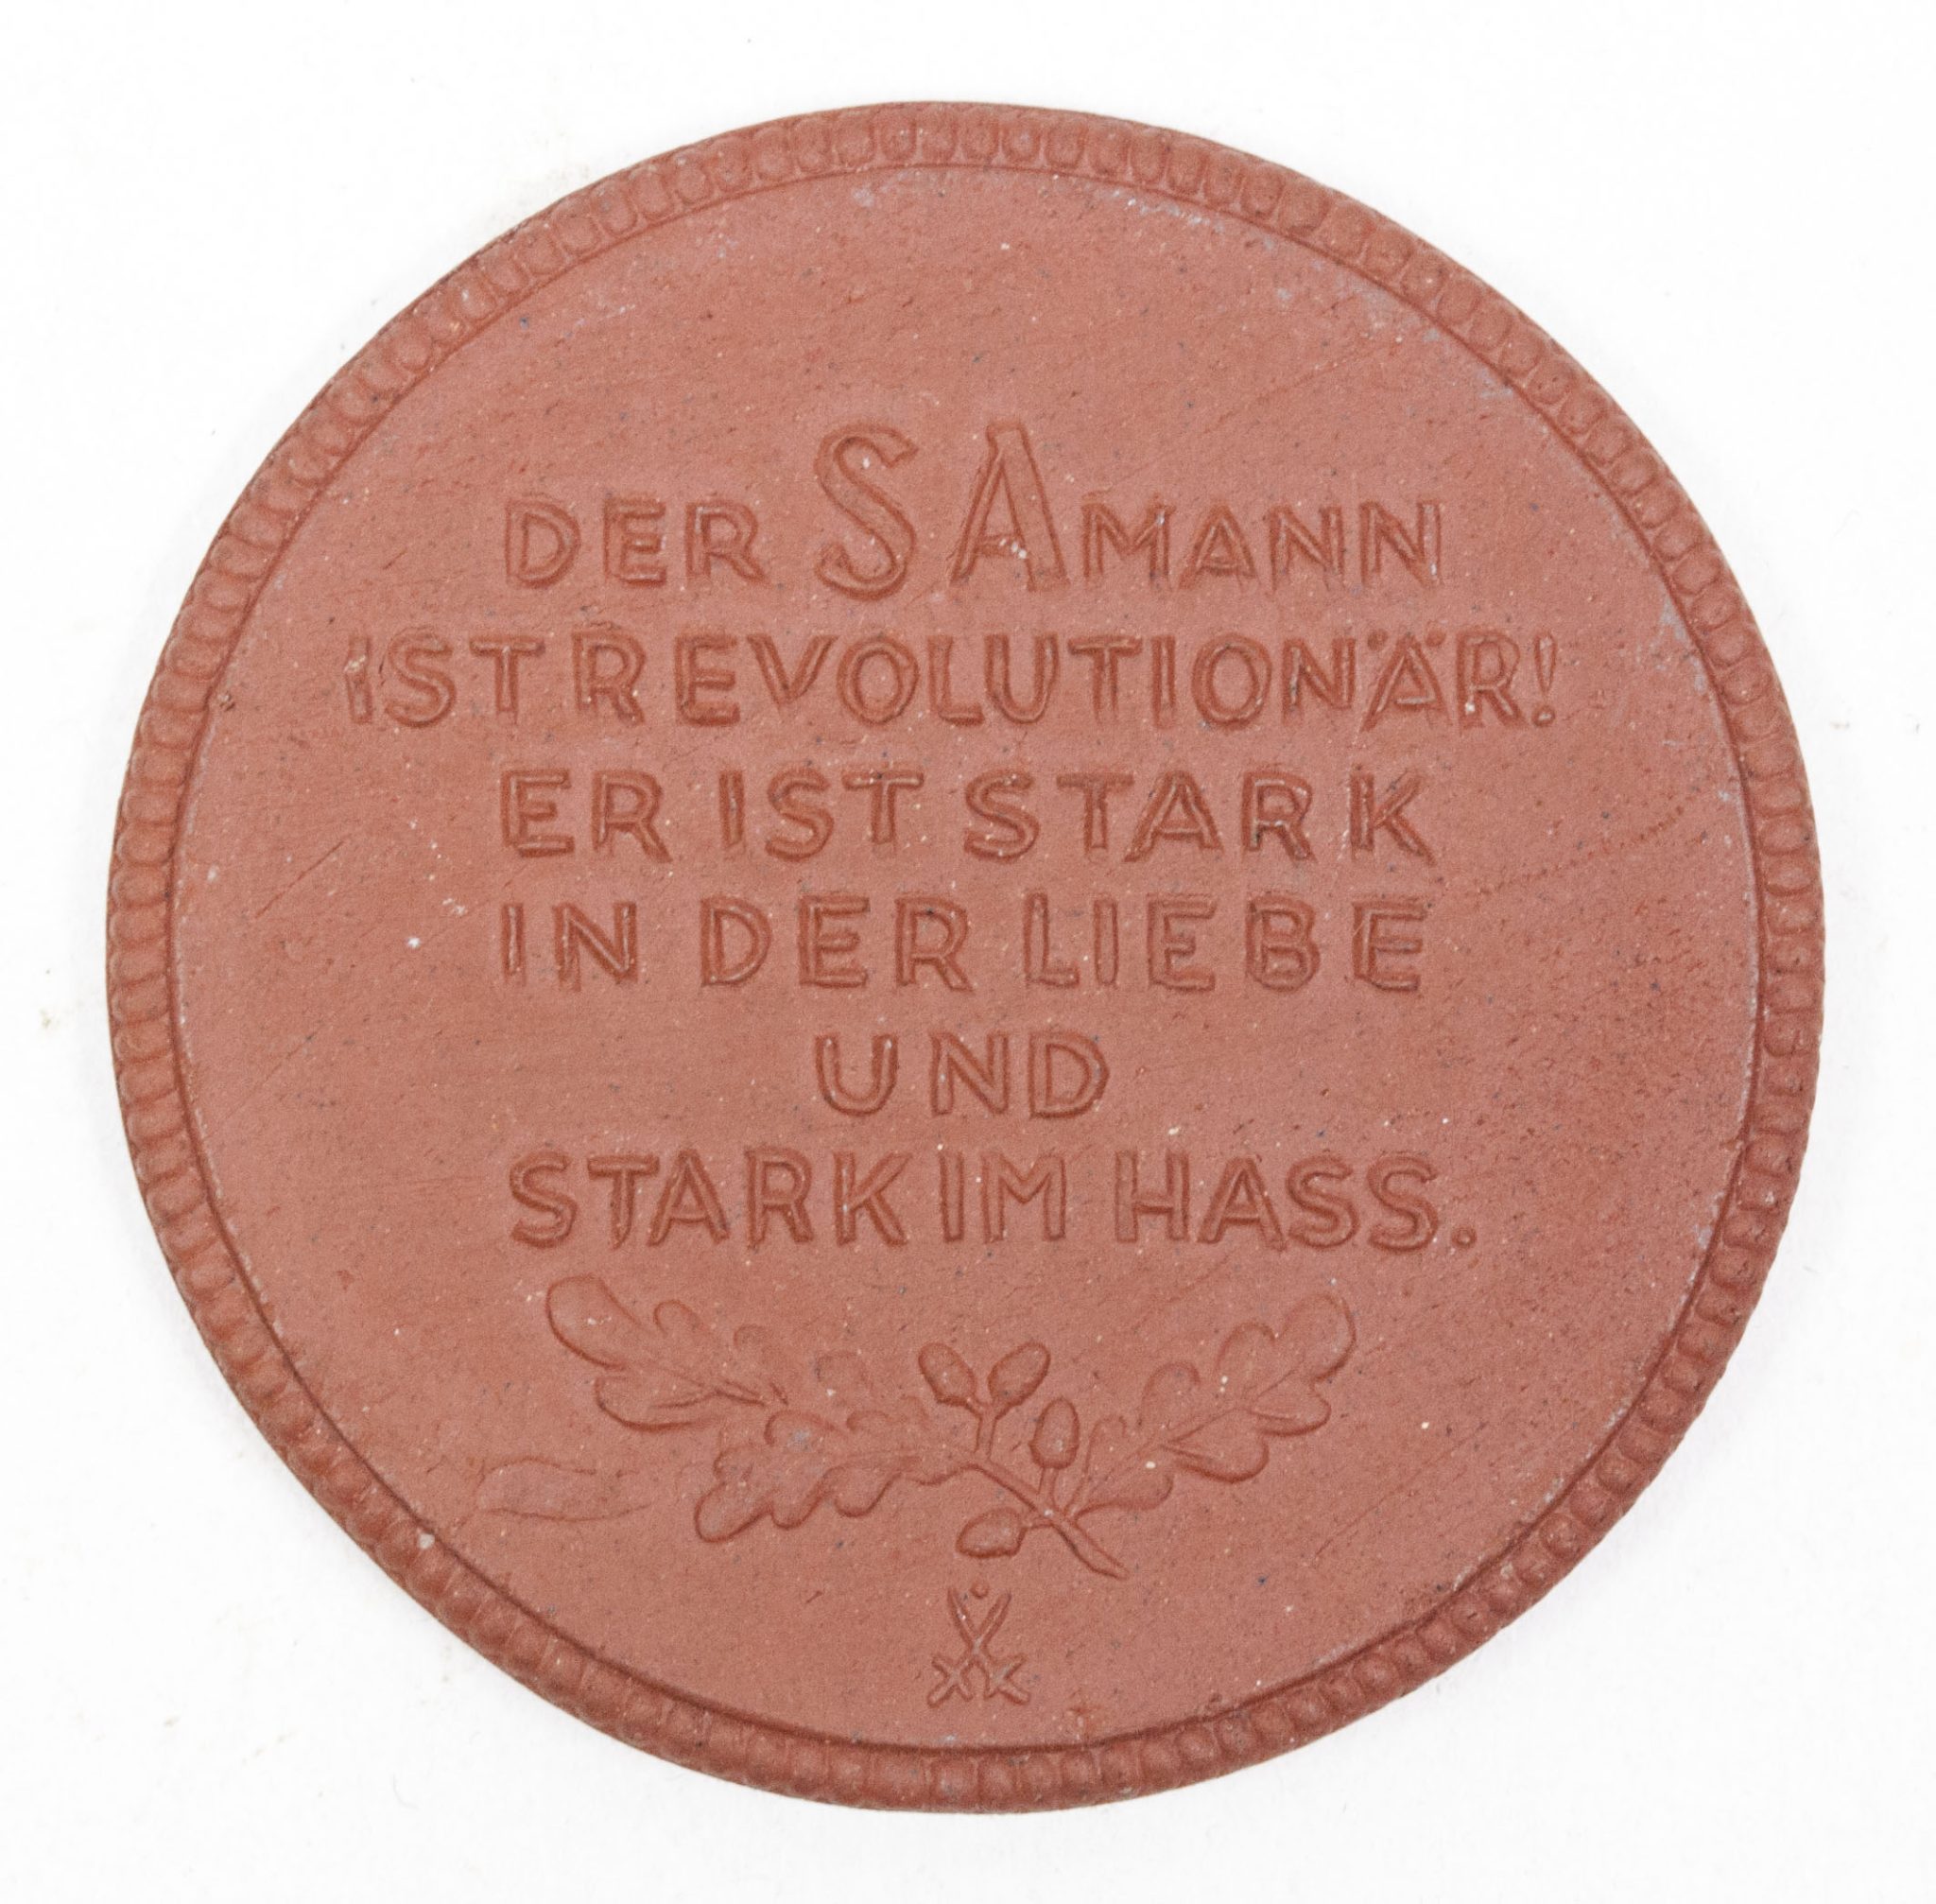 SA Gruppenaufmarsch Dresden 1934 tablemedal